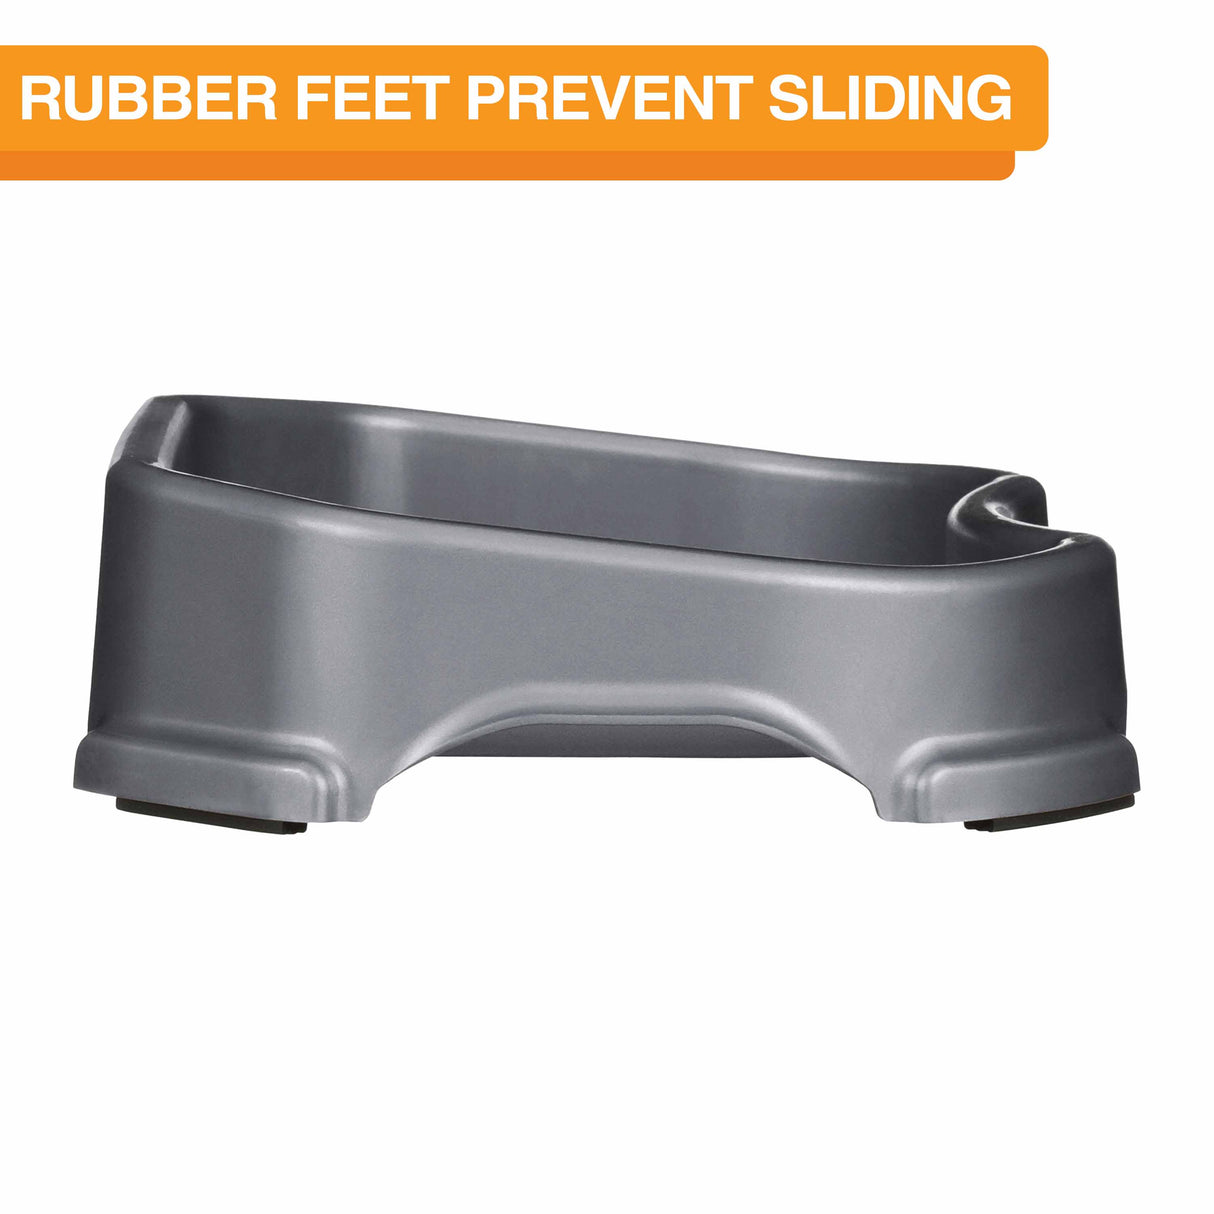 rubber feet prevent sliding